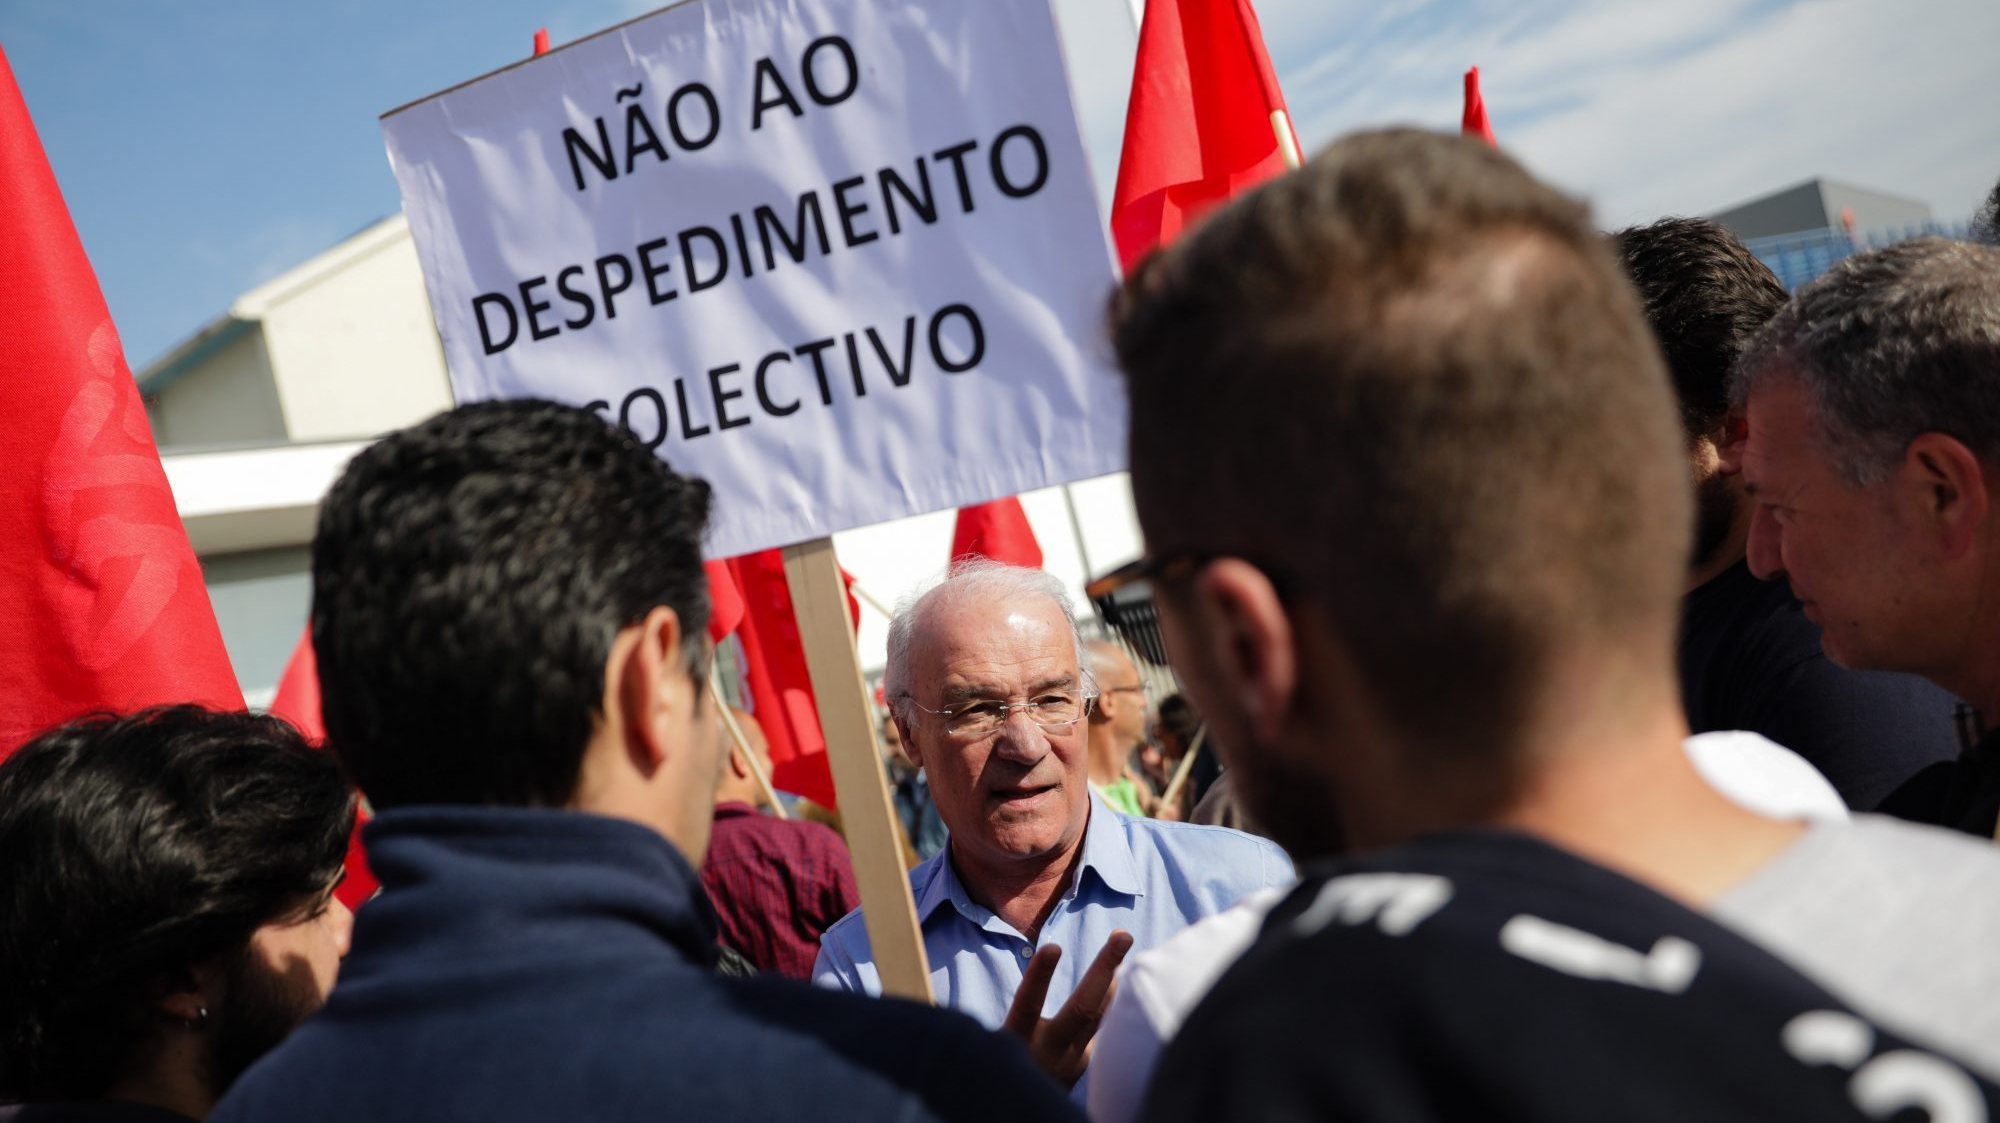 Os dados do estudo mostram que Portugal continental tinha em 2020 um total de 332,9 mil pessoas desempregadas, mais 12,3 mil que no ano anterior.